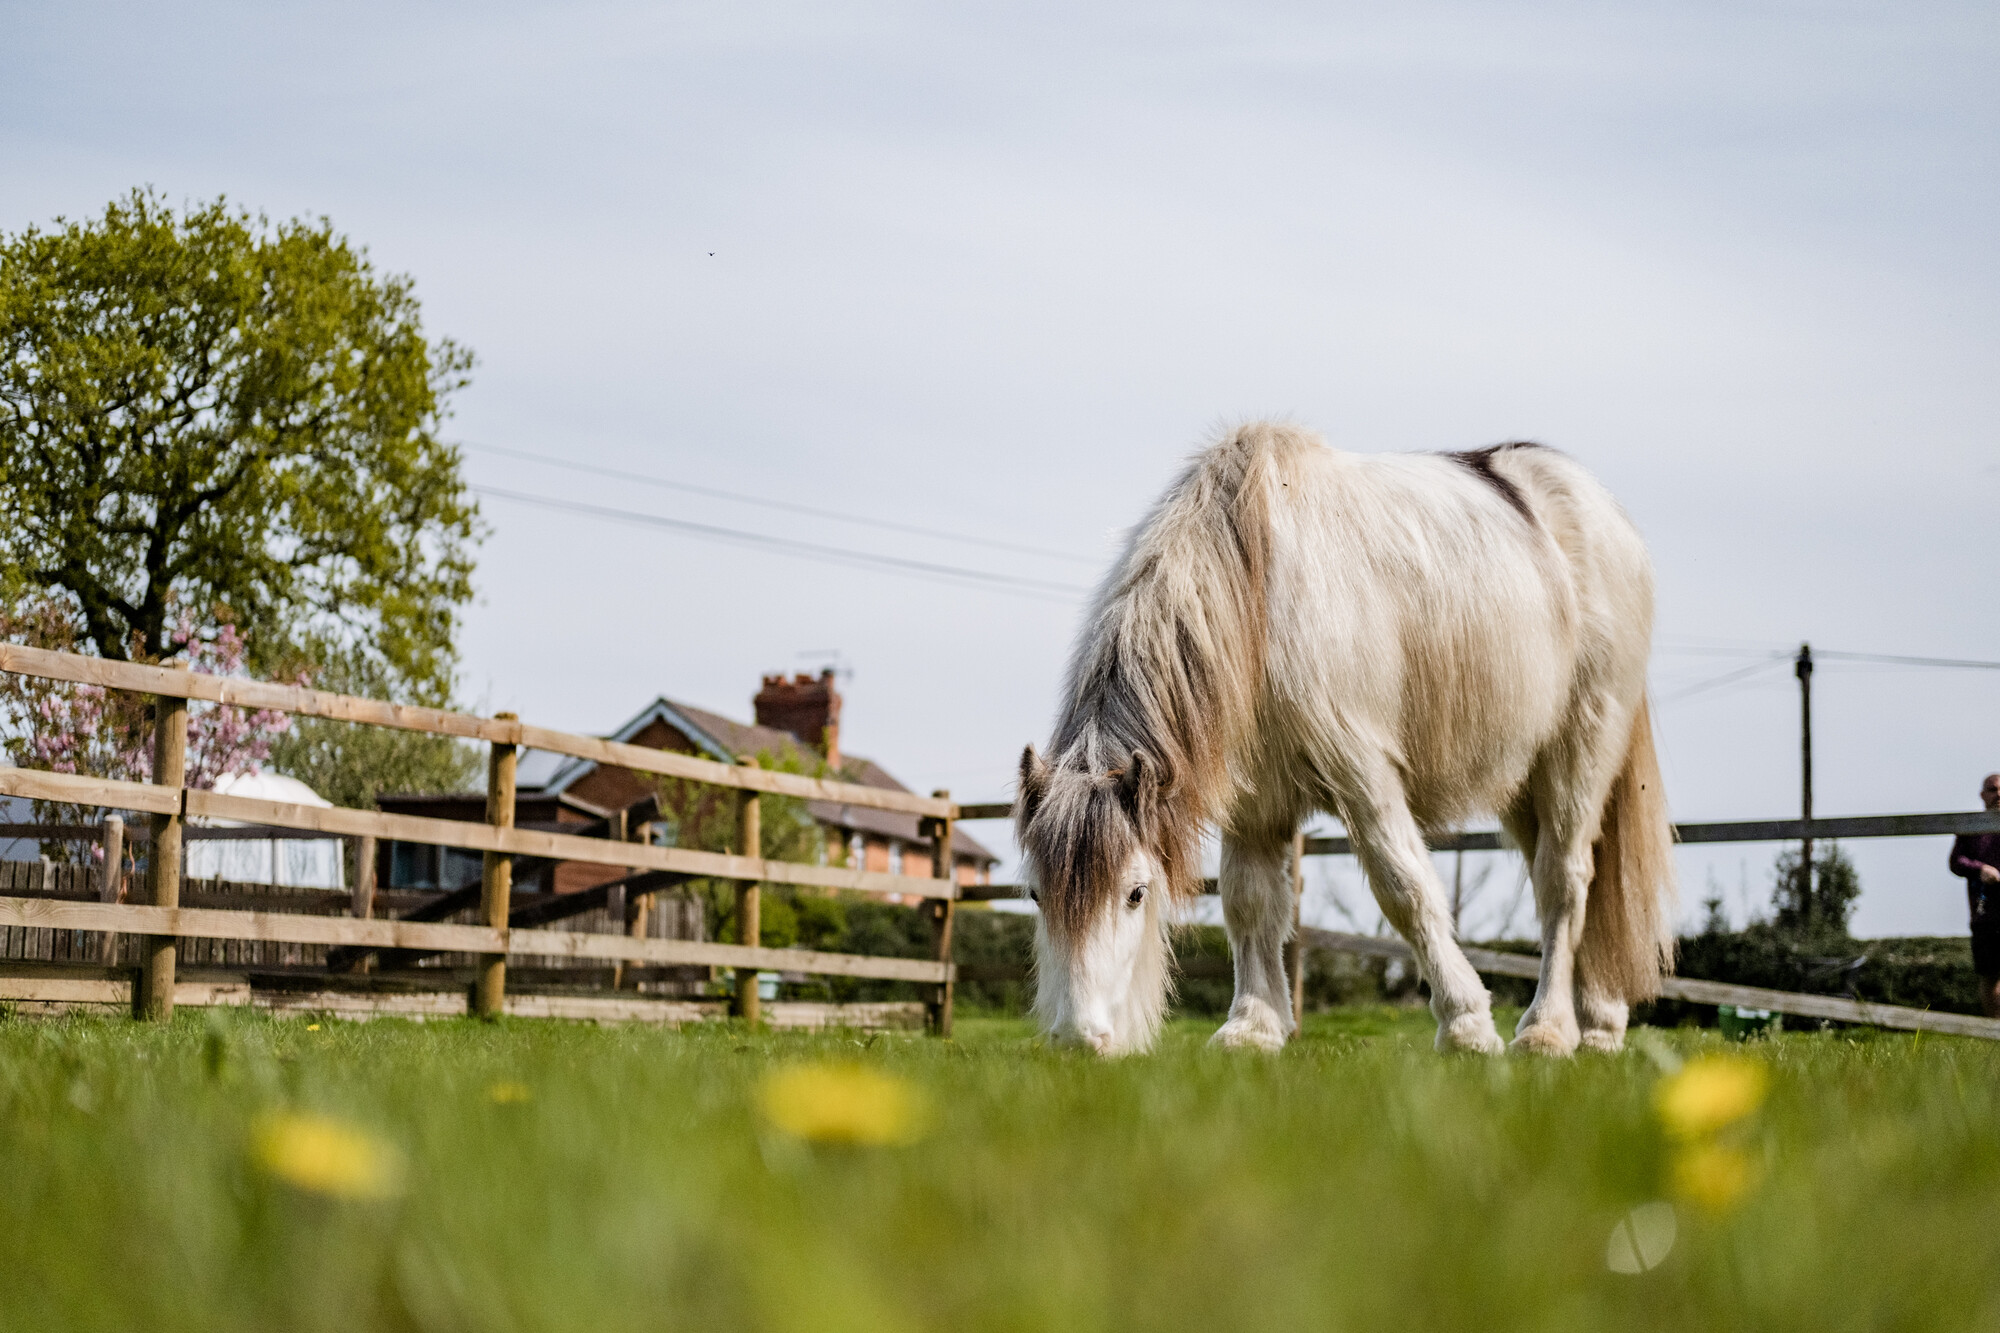 A grey pony grazes in their field.